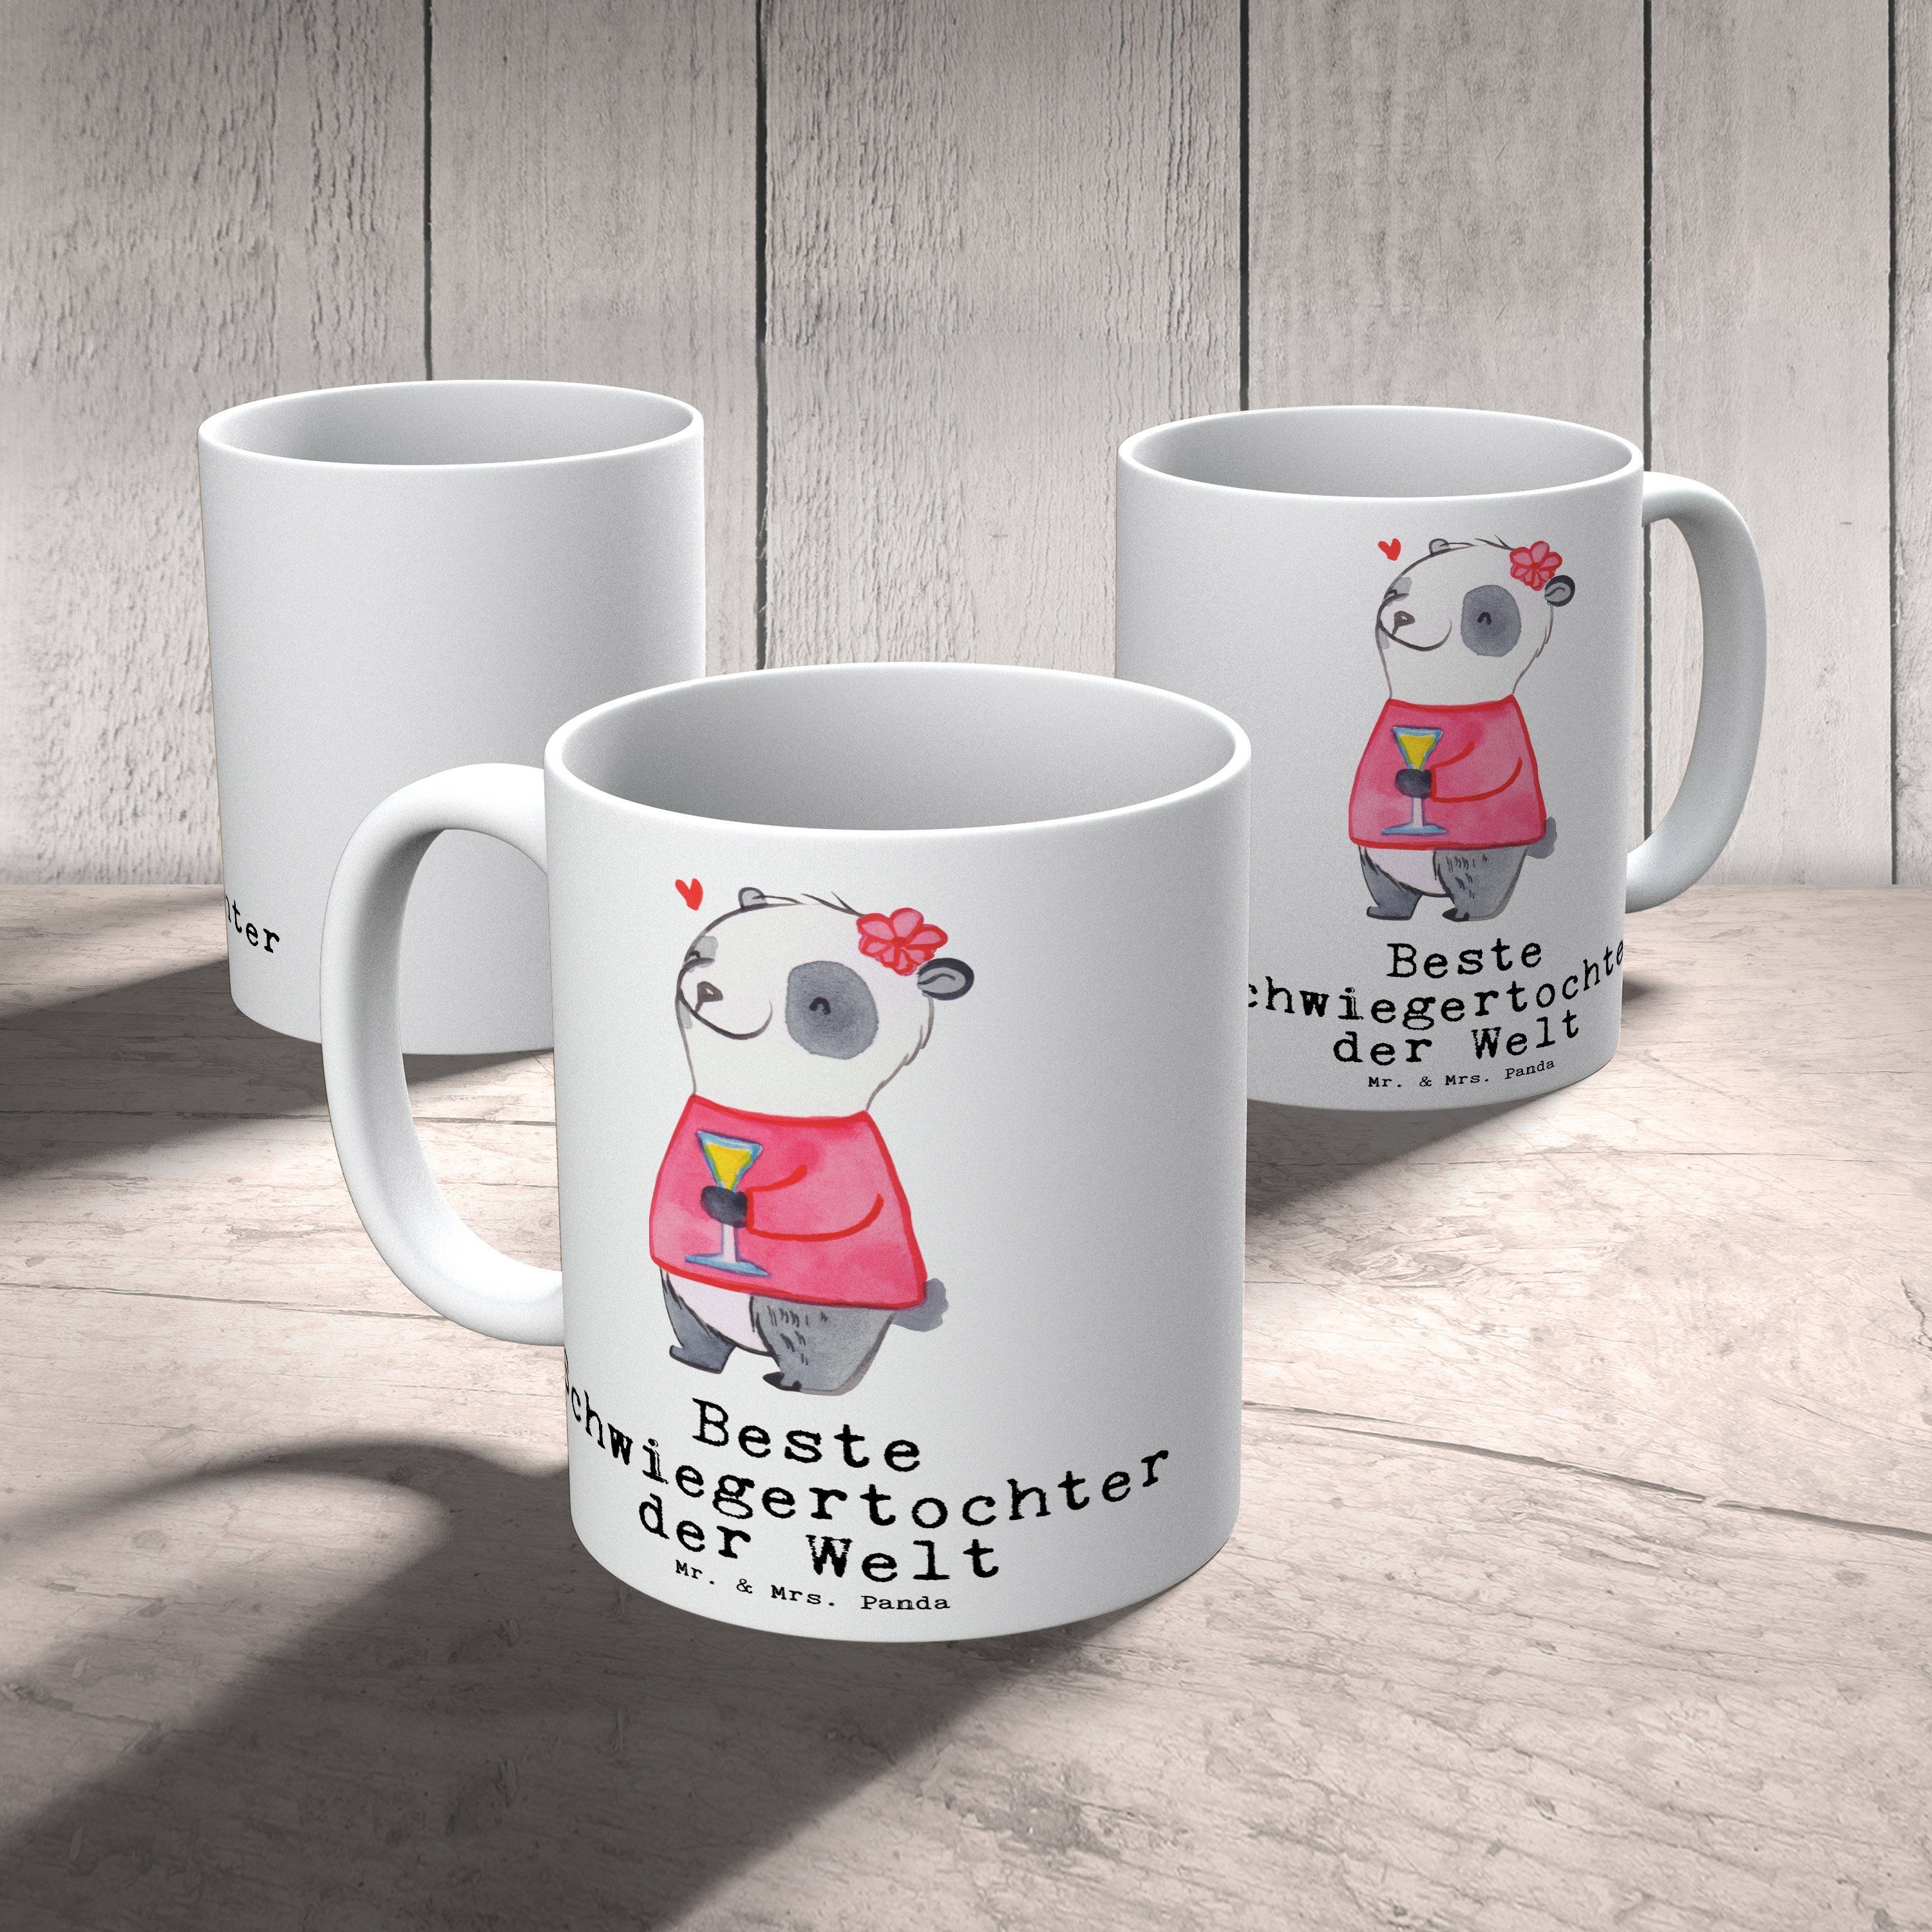 Tee, Becher, Mrs. Panda Panda Mr. & Keramik Weiß Dankeschön, - Tasse Kaffeetasse, Freude machen, Geschenkidee, Schenken, Schwiegertochter der Geschenk, Welt - Kaffeebecher, Beste